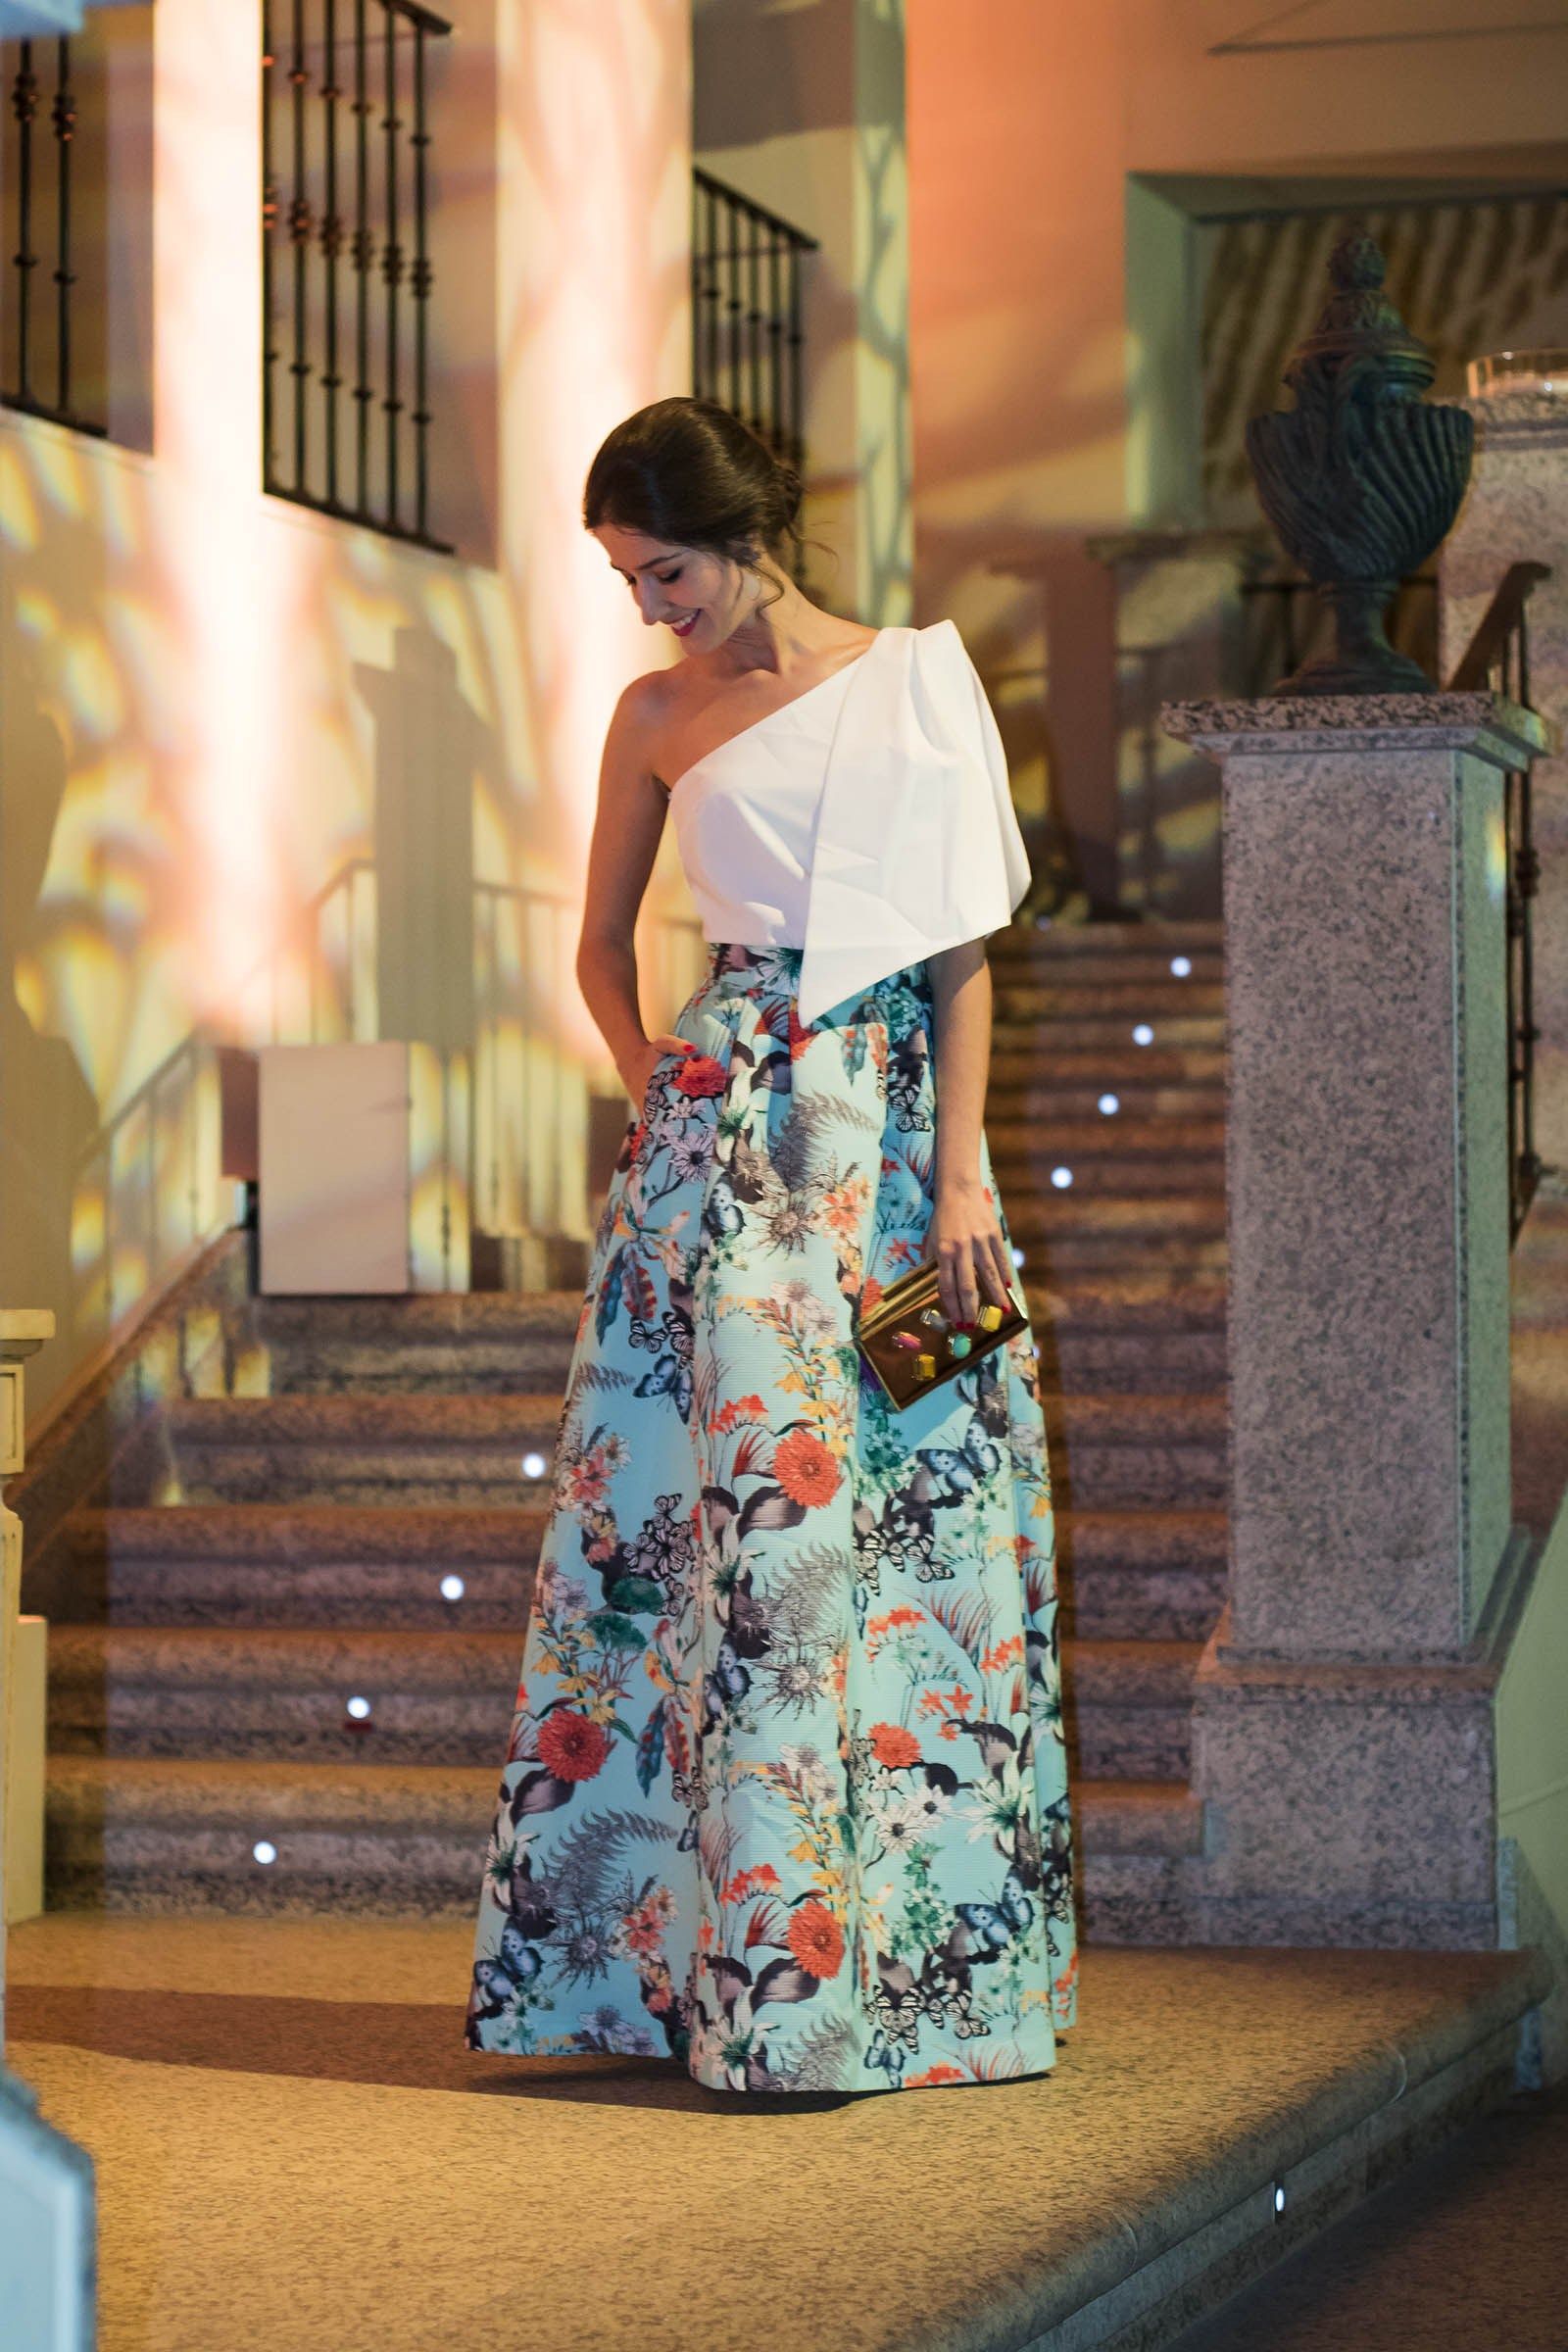 Promover Roble posterior 19 Ideas de vestidos para usar en una boda al aire libre